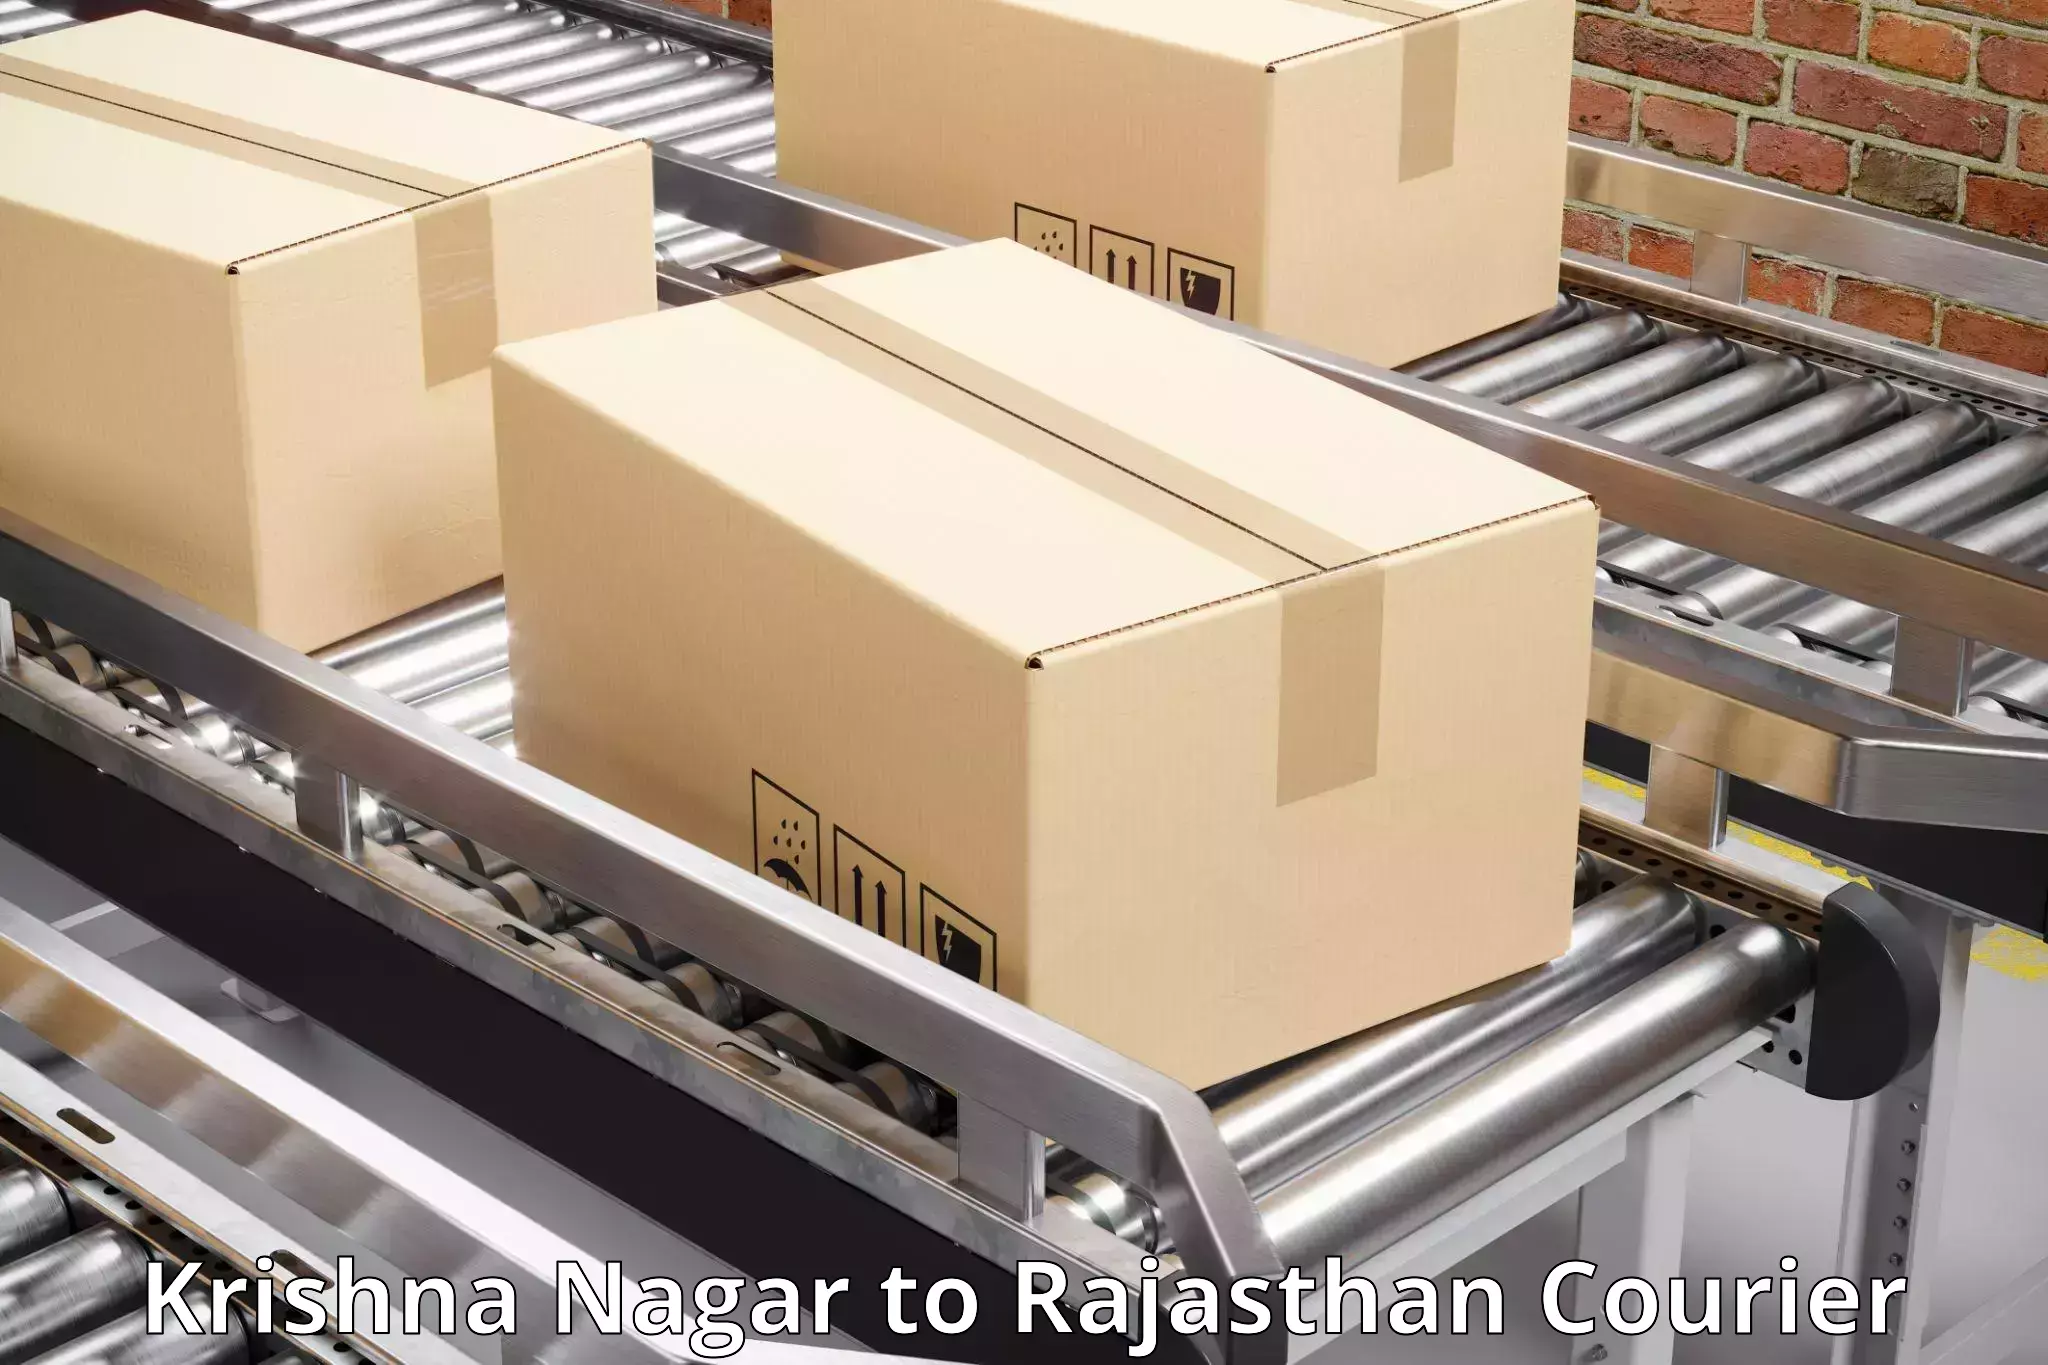 Professional courier handling in Krishna Nagar to Pratapgarh Rajasthan